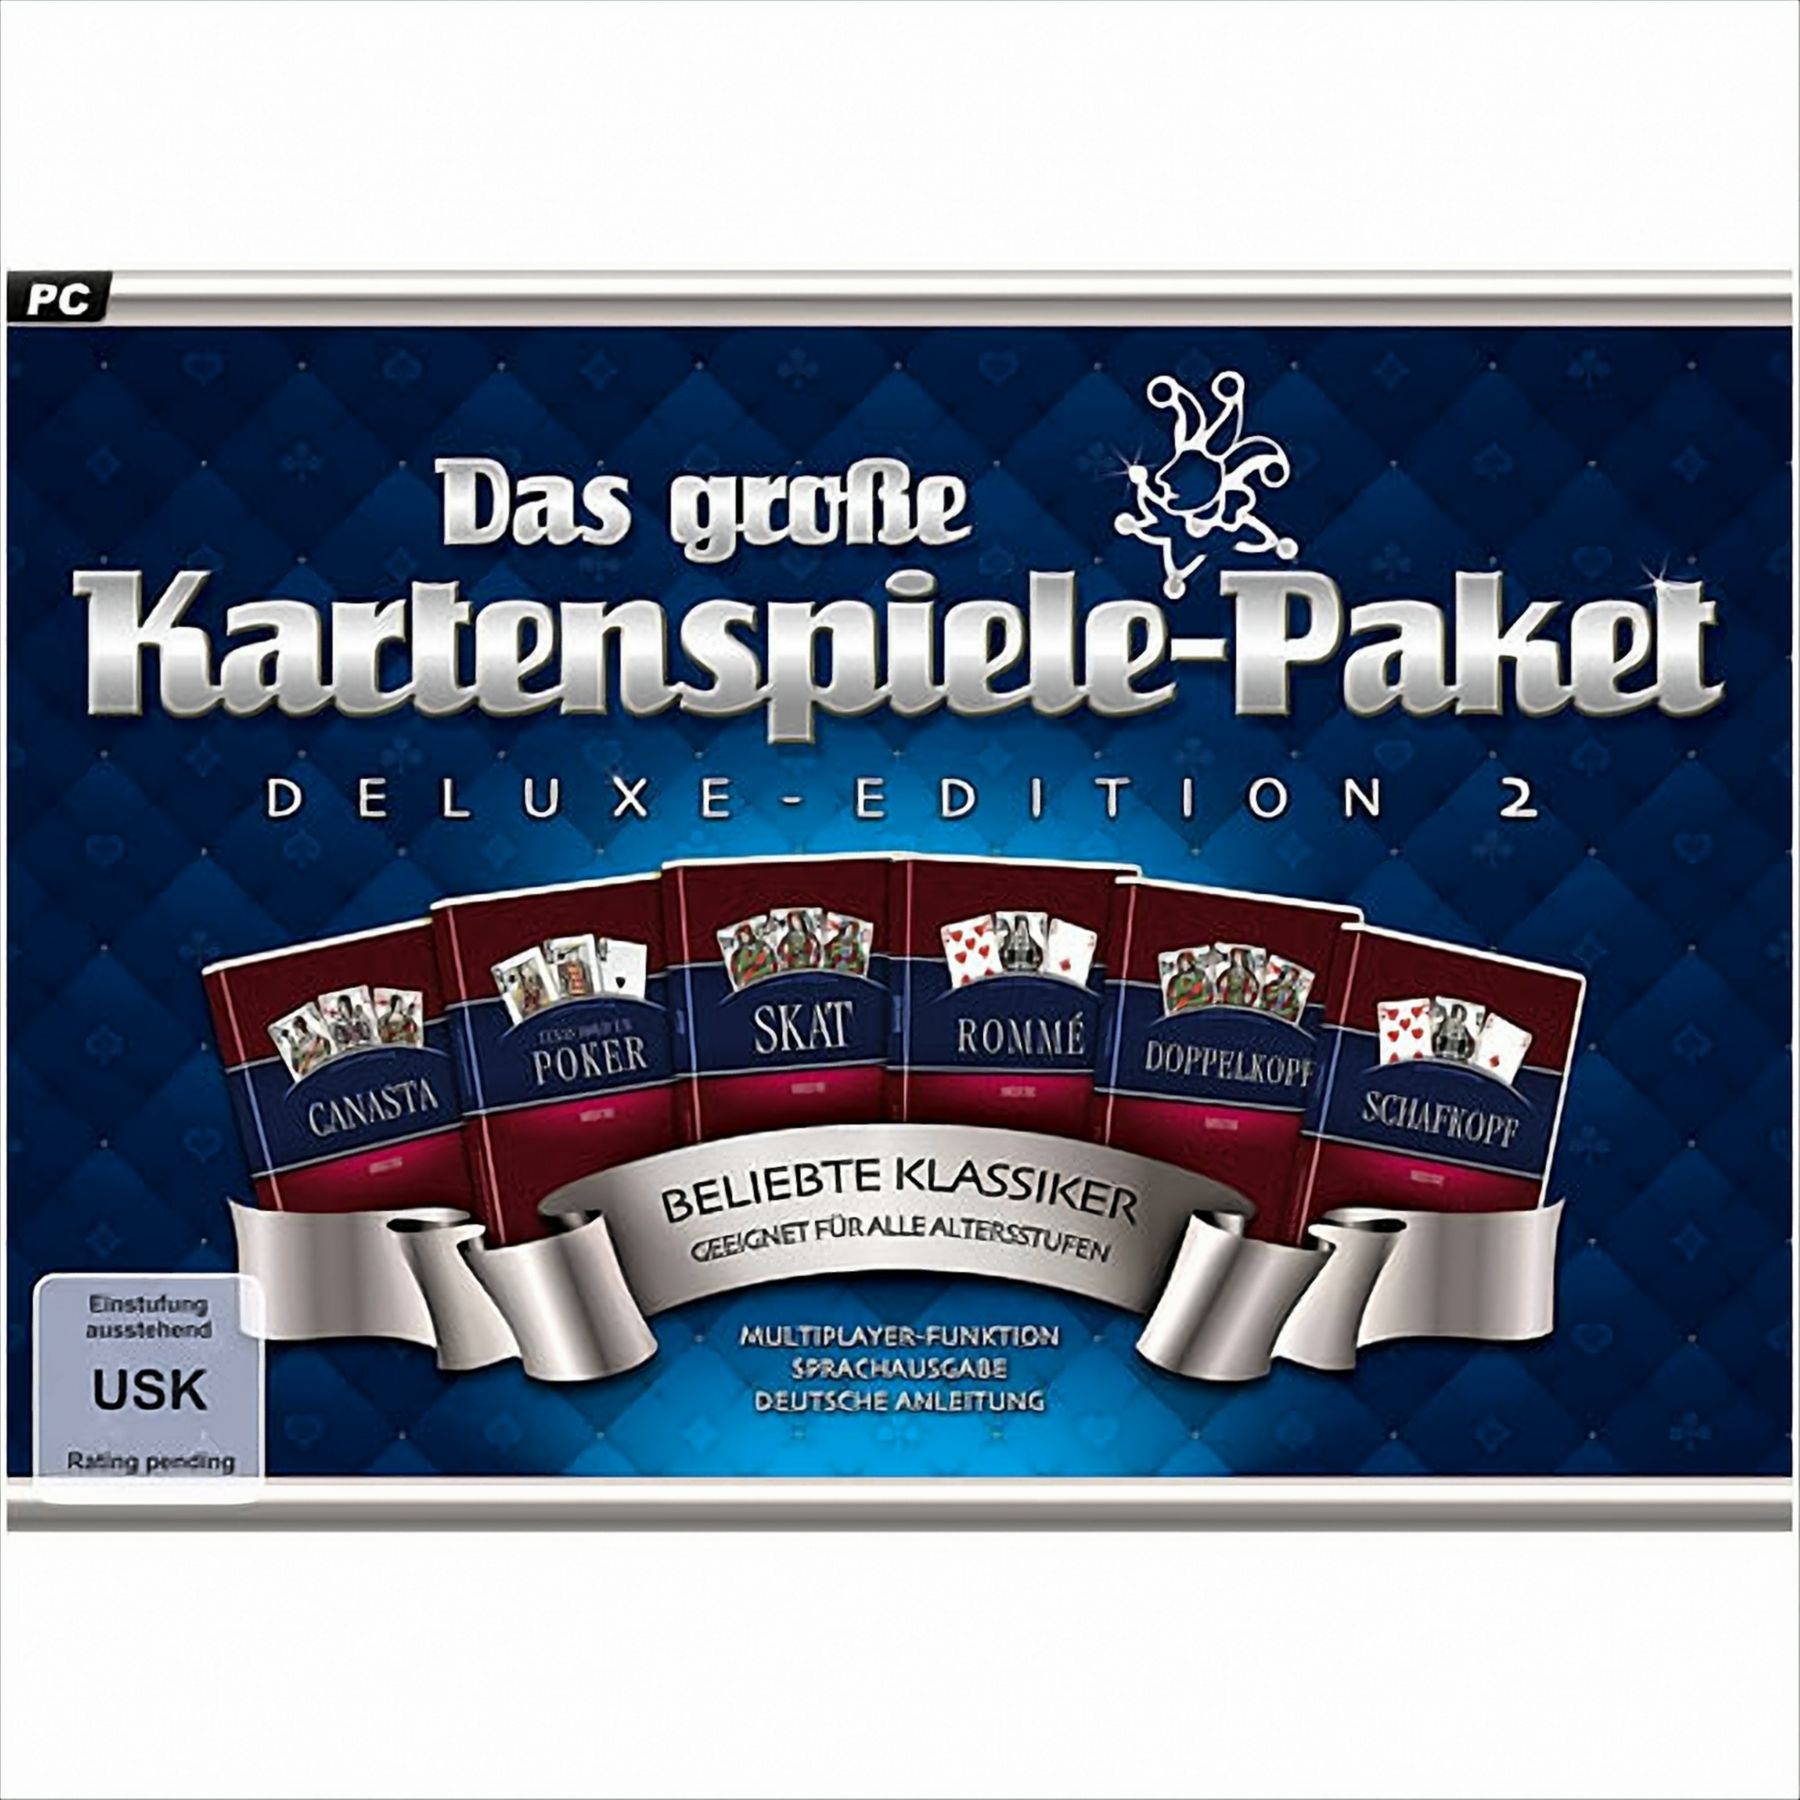 Deluxe-Edition große 2: Das - [PC] Kartenspiele-Paket